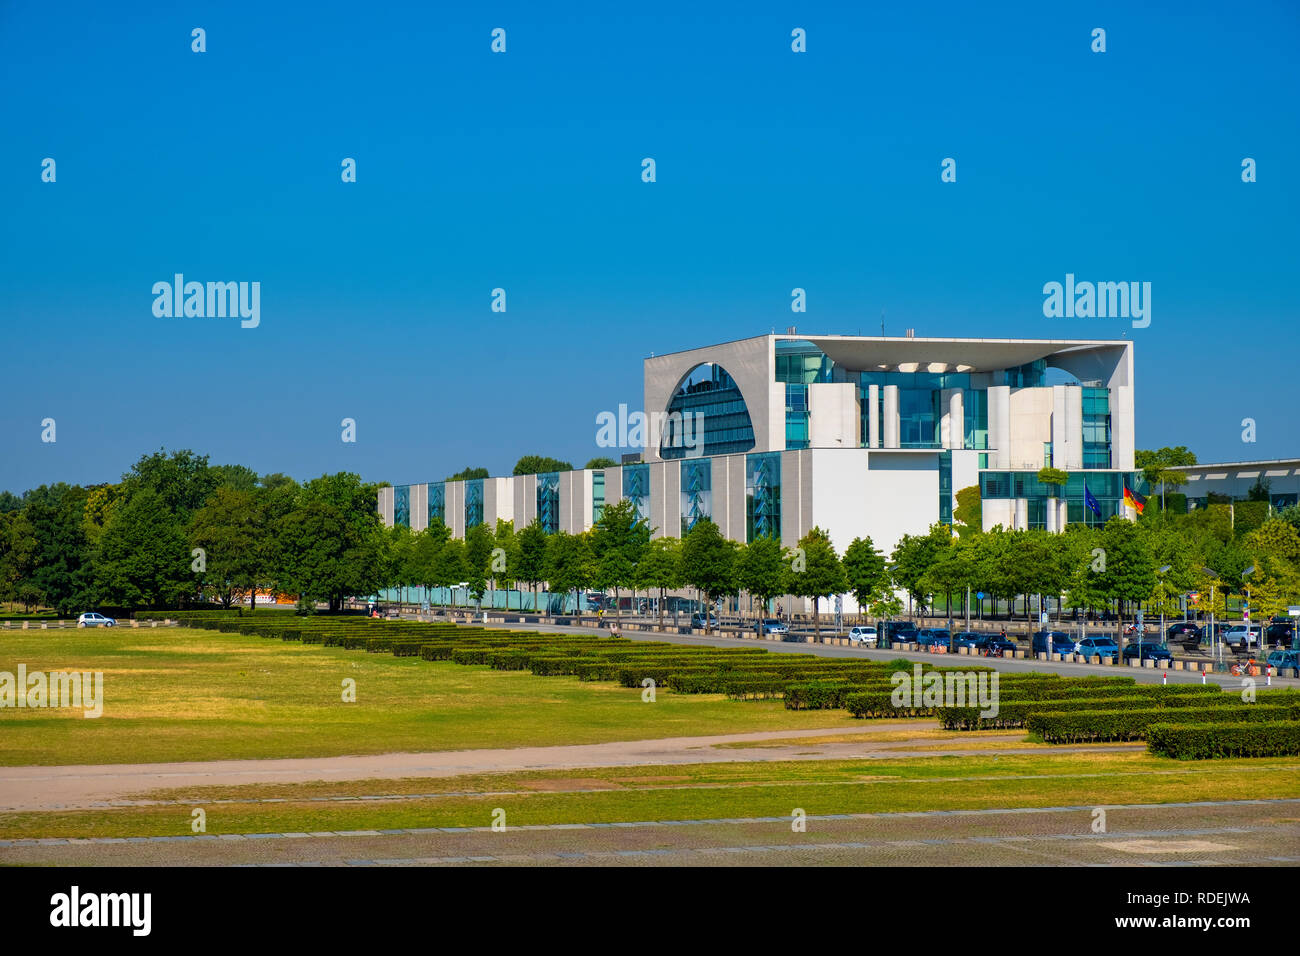 Berlin, Berlin - Allemagne / état 2018/07/31 : Vue panoramique de la chancellerie allemande moderne - construction Bundeskanzieramt - Bureau principal de Chancelier Banque D'Images